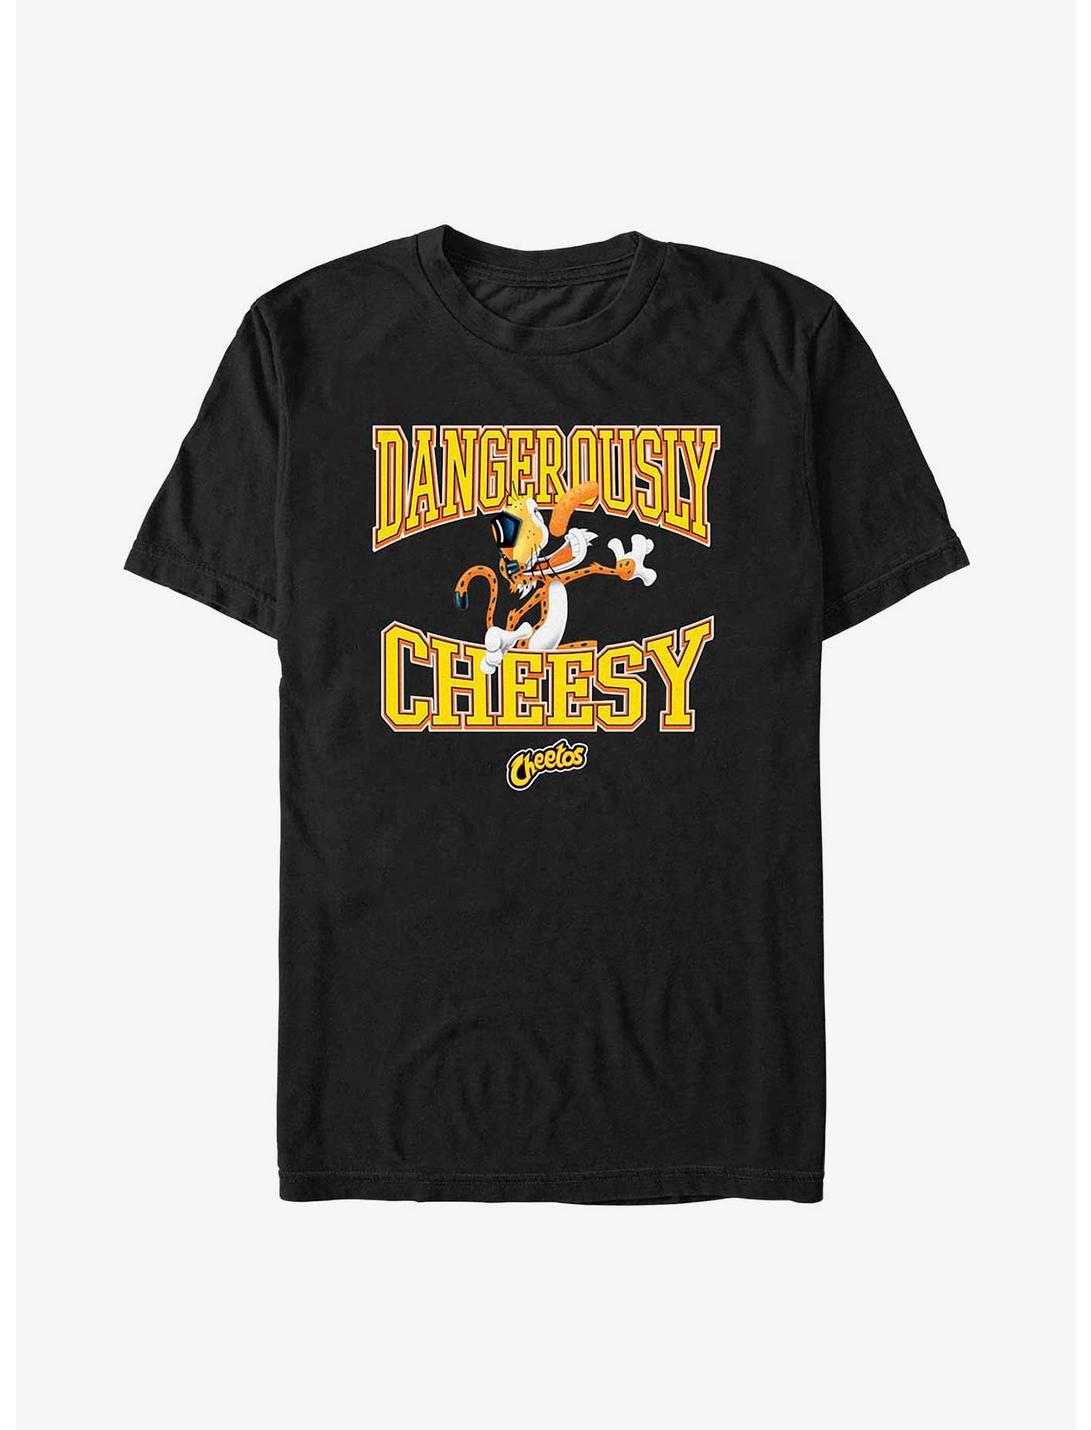 Cheetos Dangerously Cheesy T-Shirt, BLACK, hi-res